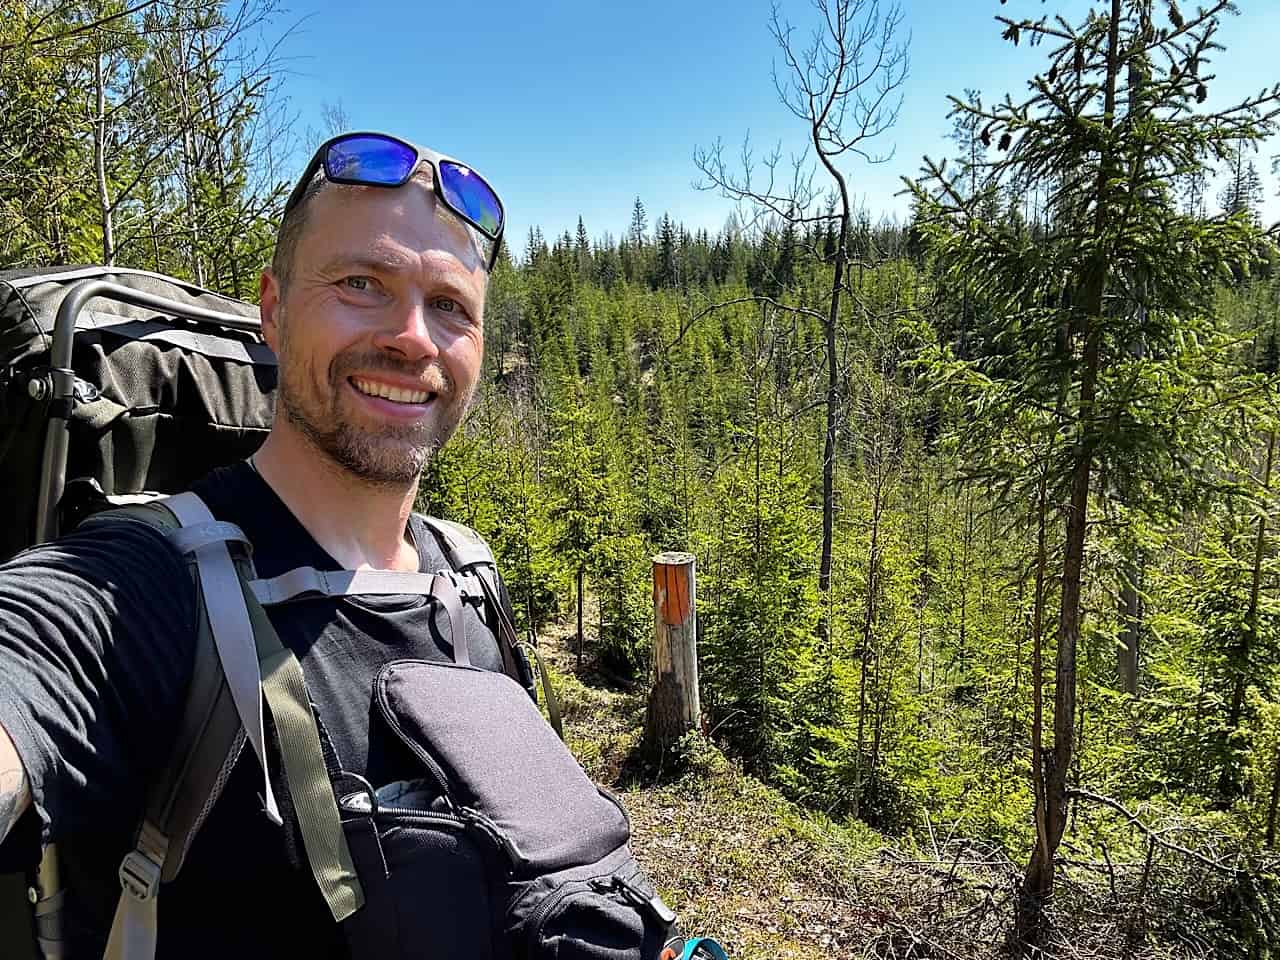 Etape 2 af Finland på langs - til fods, med eventyrer Erik B. Jørgensen, selfie i skoven